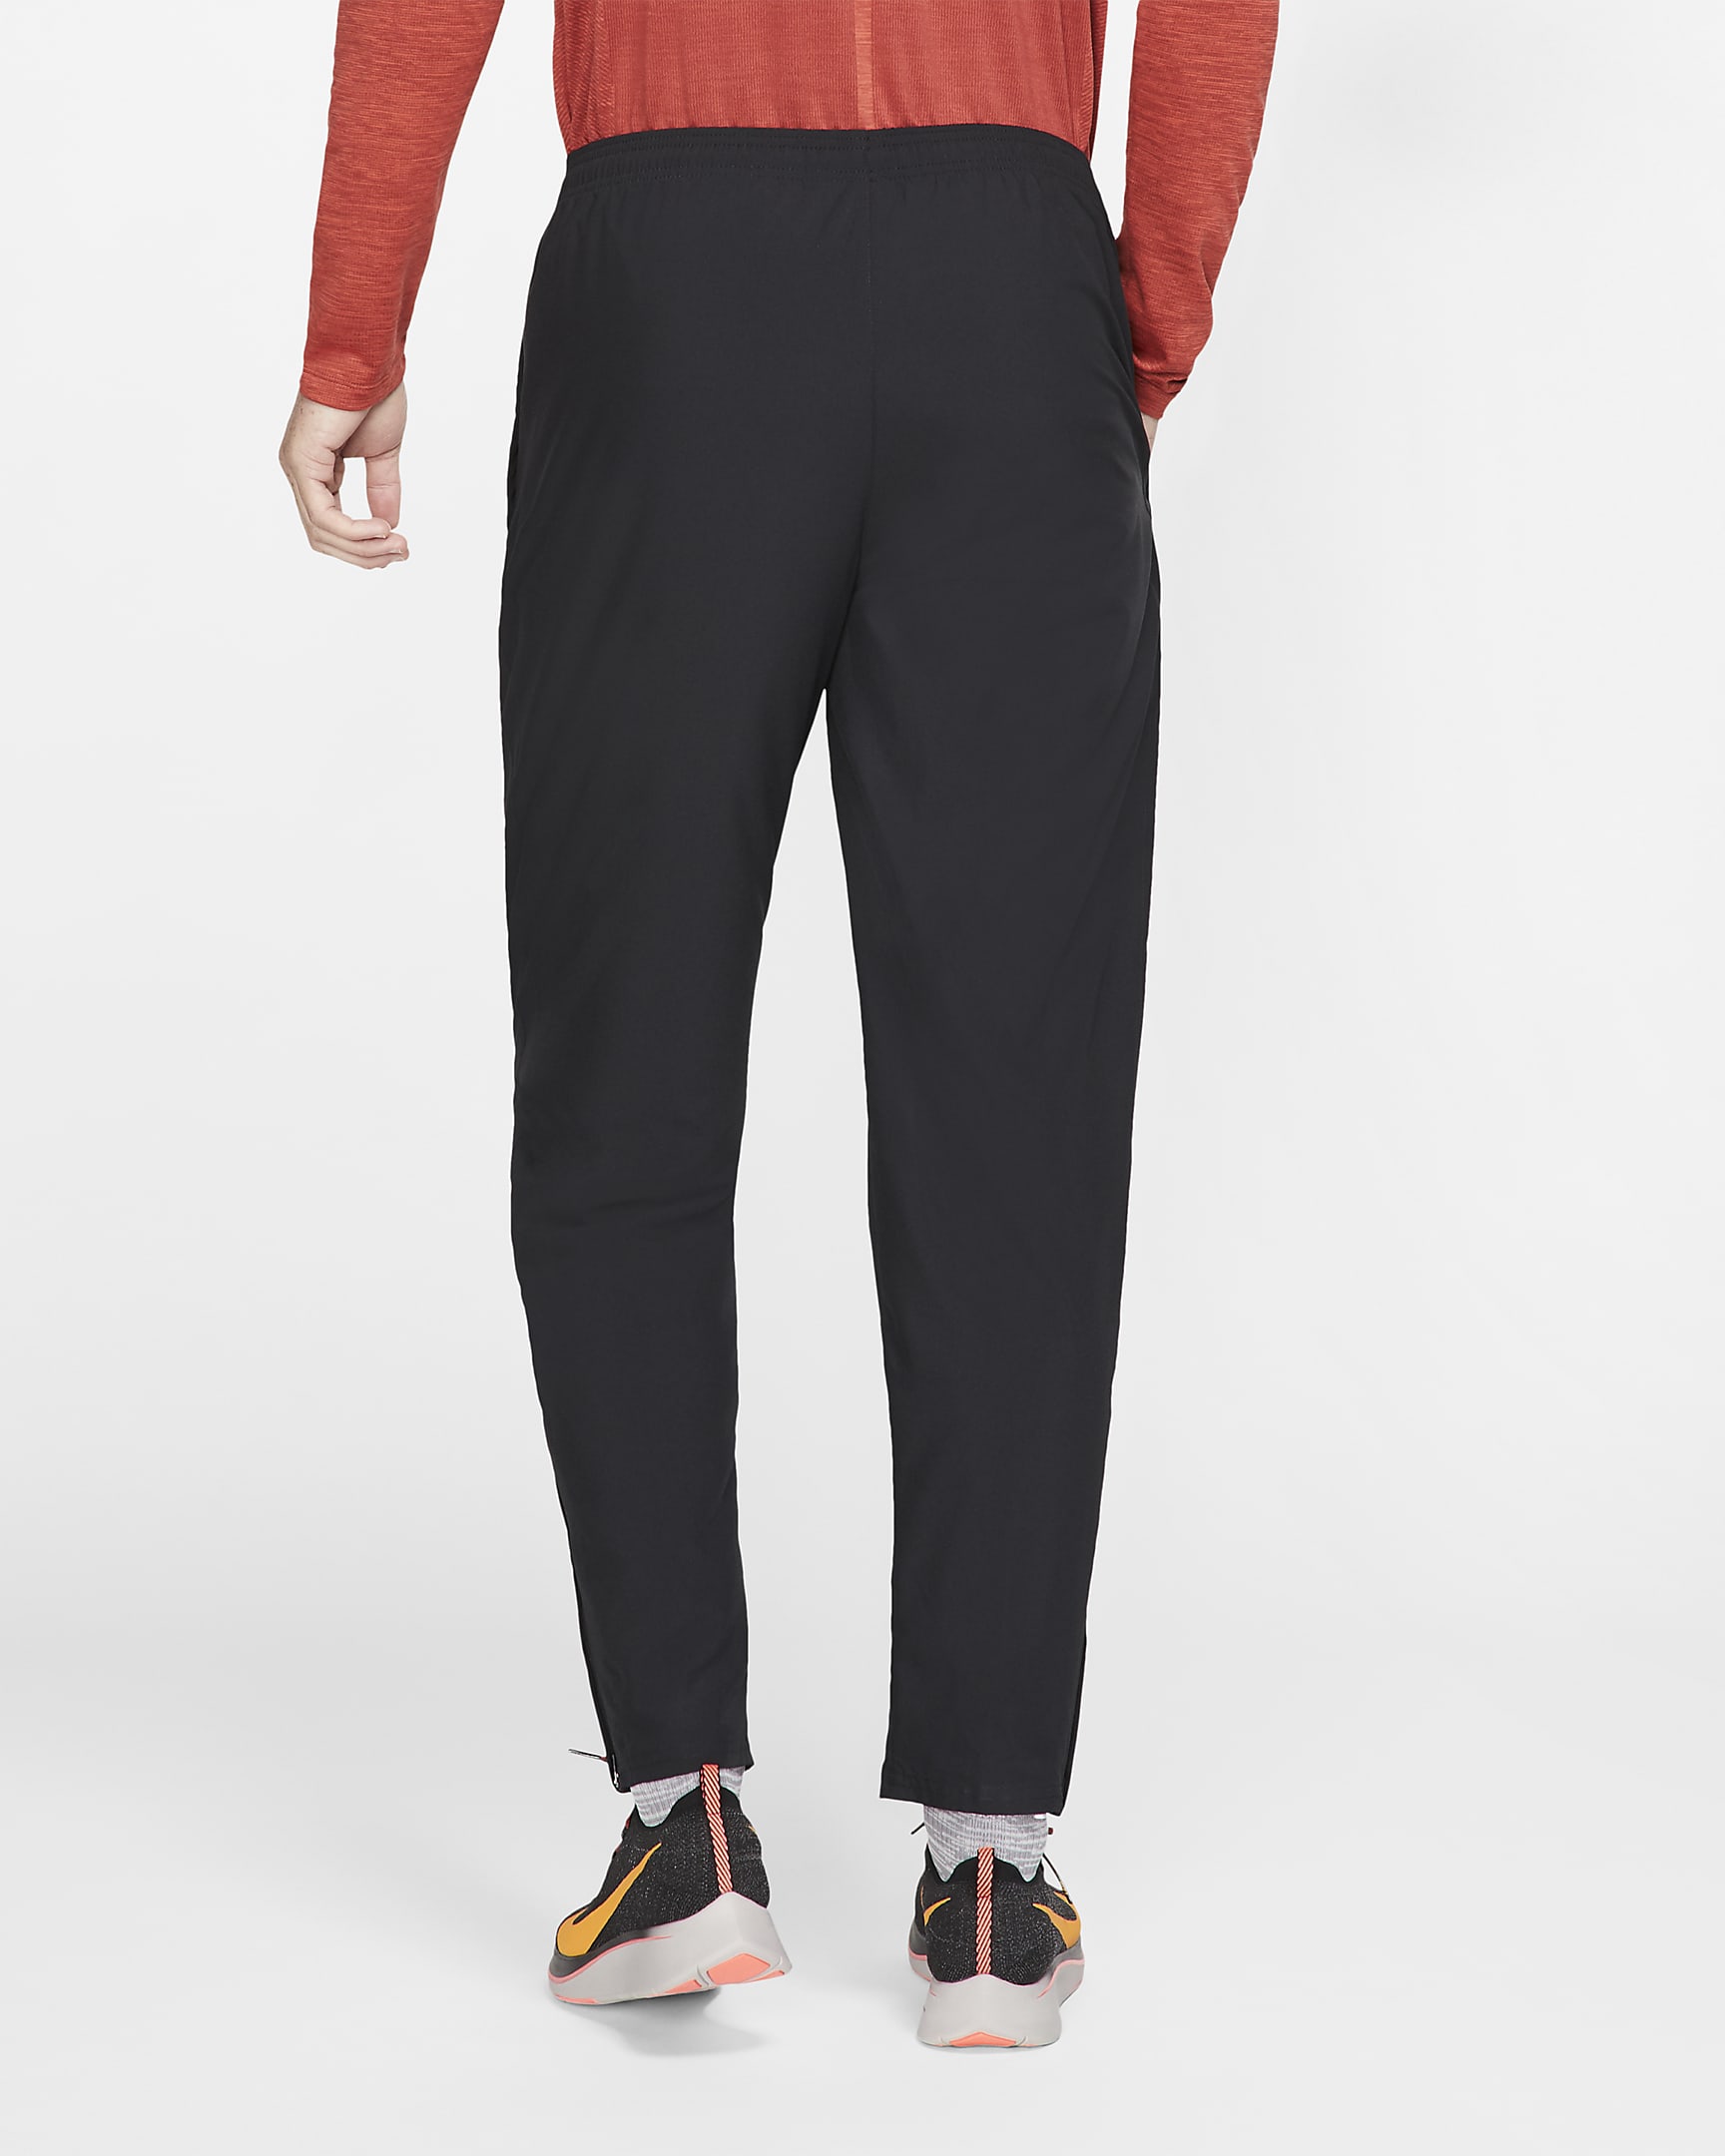 Nike Men's Woven Running Trousers. Nike FI